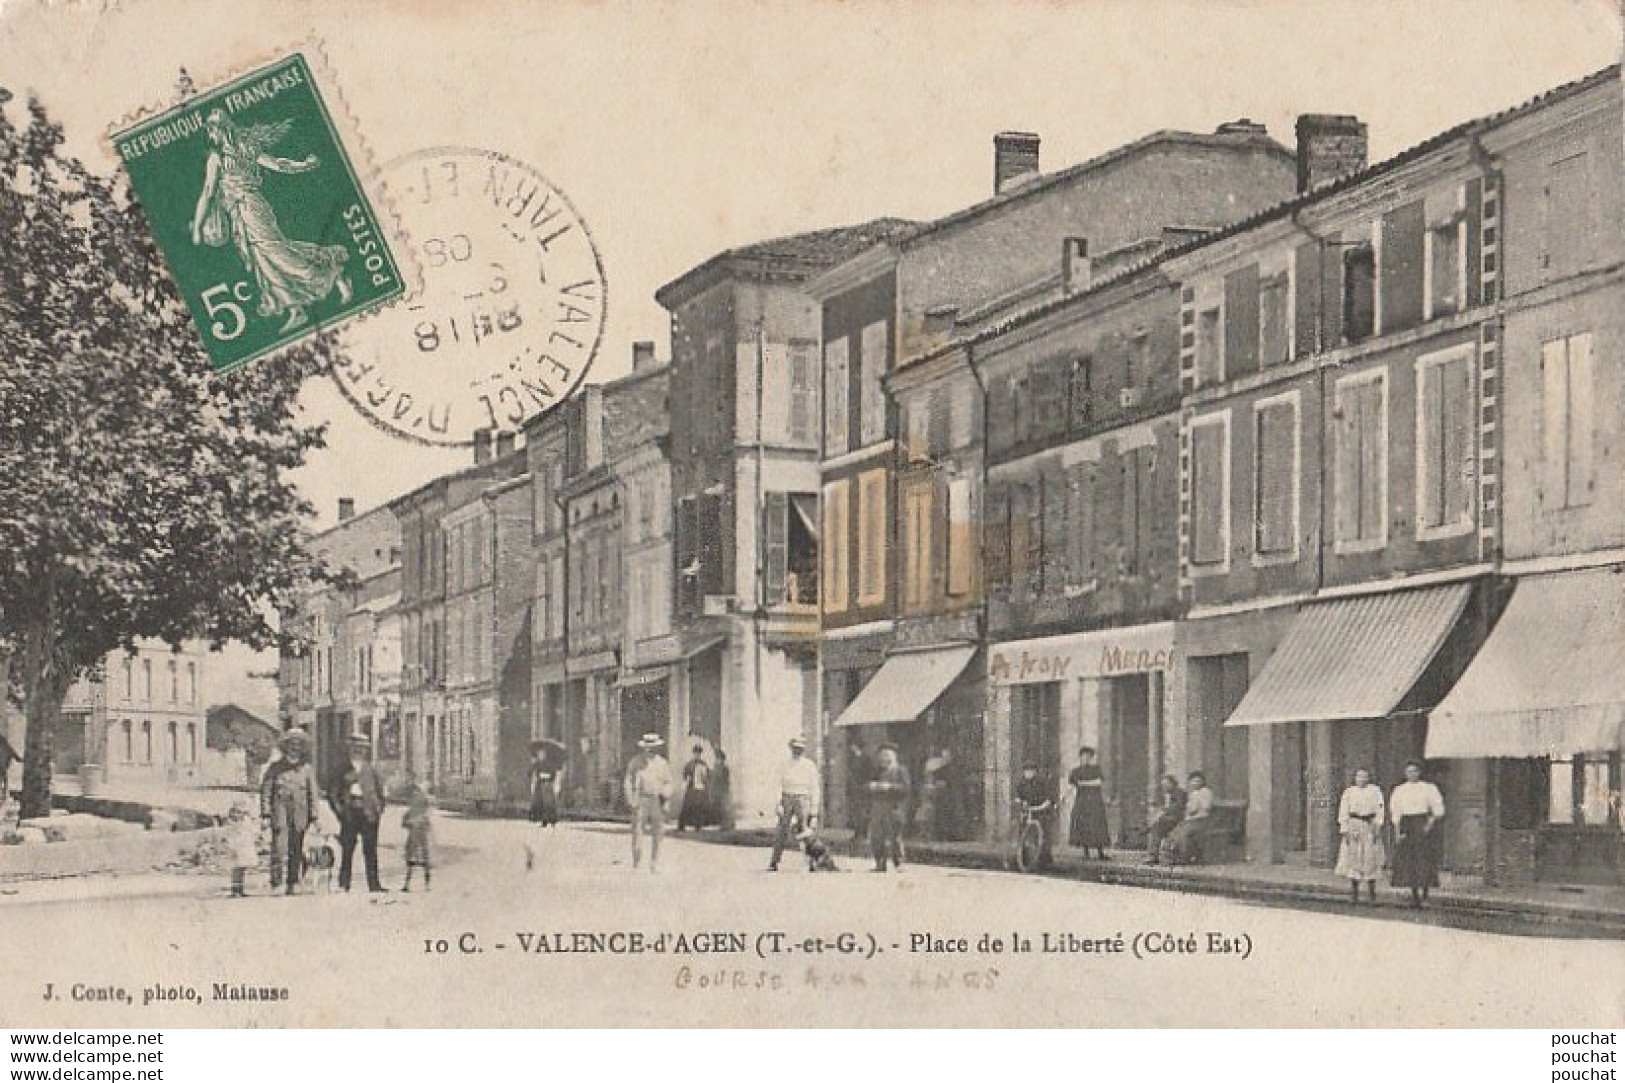 82) VALENCE D'AGEN (TARN ET GARONNE)  PLACE DE LA LIBERTE (COTE EST) - (ANIMEE  - COMMERCES - VILLAGEOIS)  - Valence